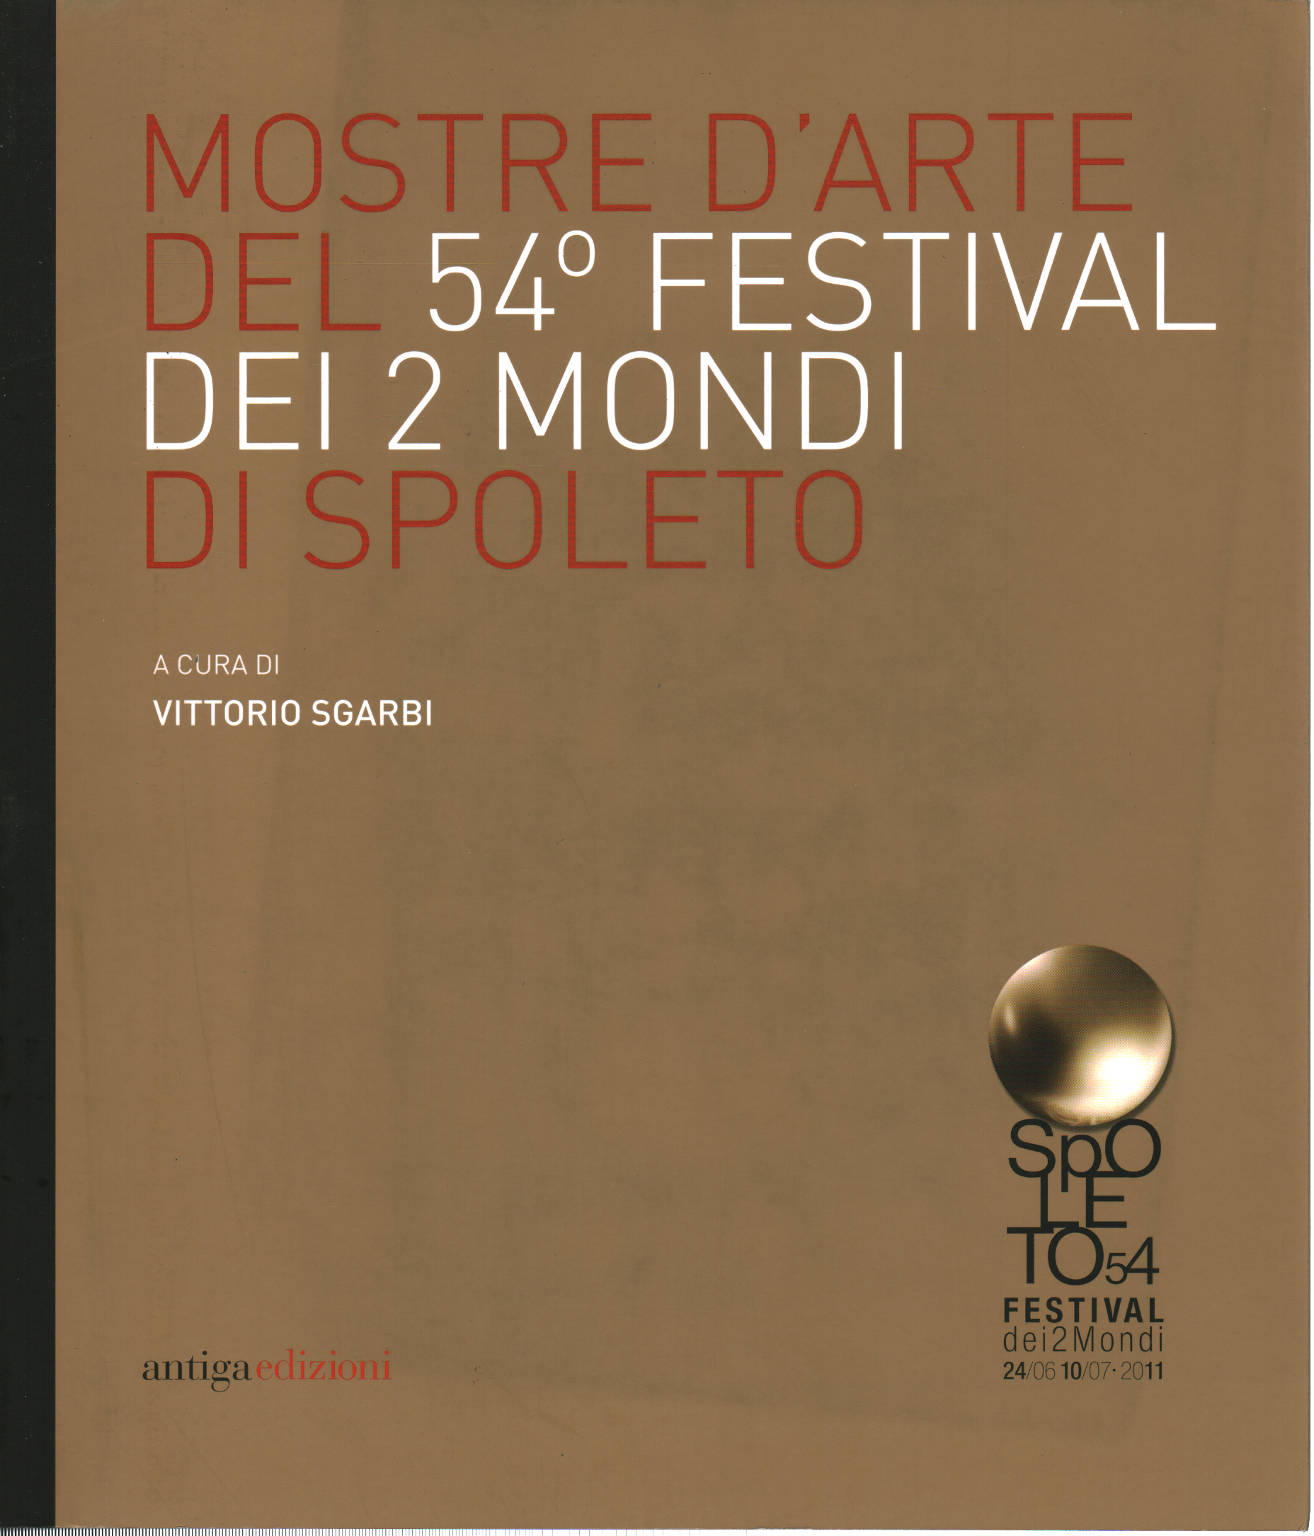 Des expositions d'Art de la 54e Festival dei 2 mondi di Spo, Vittorio Sgarbi